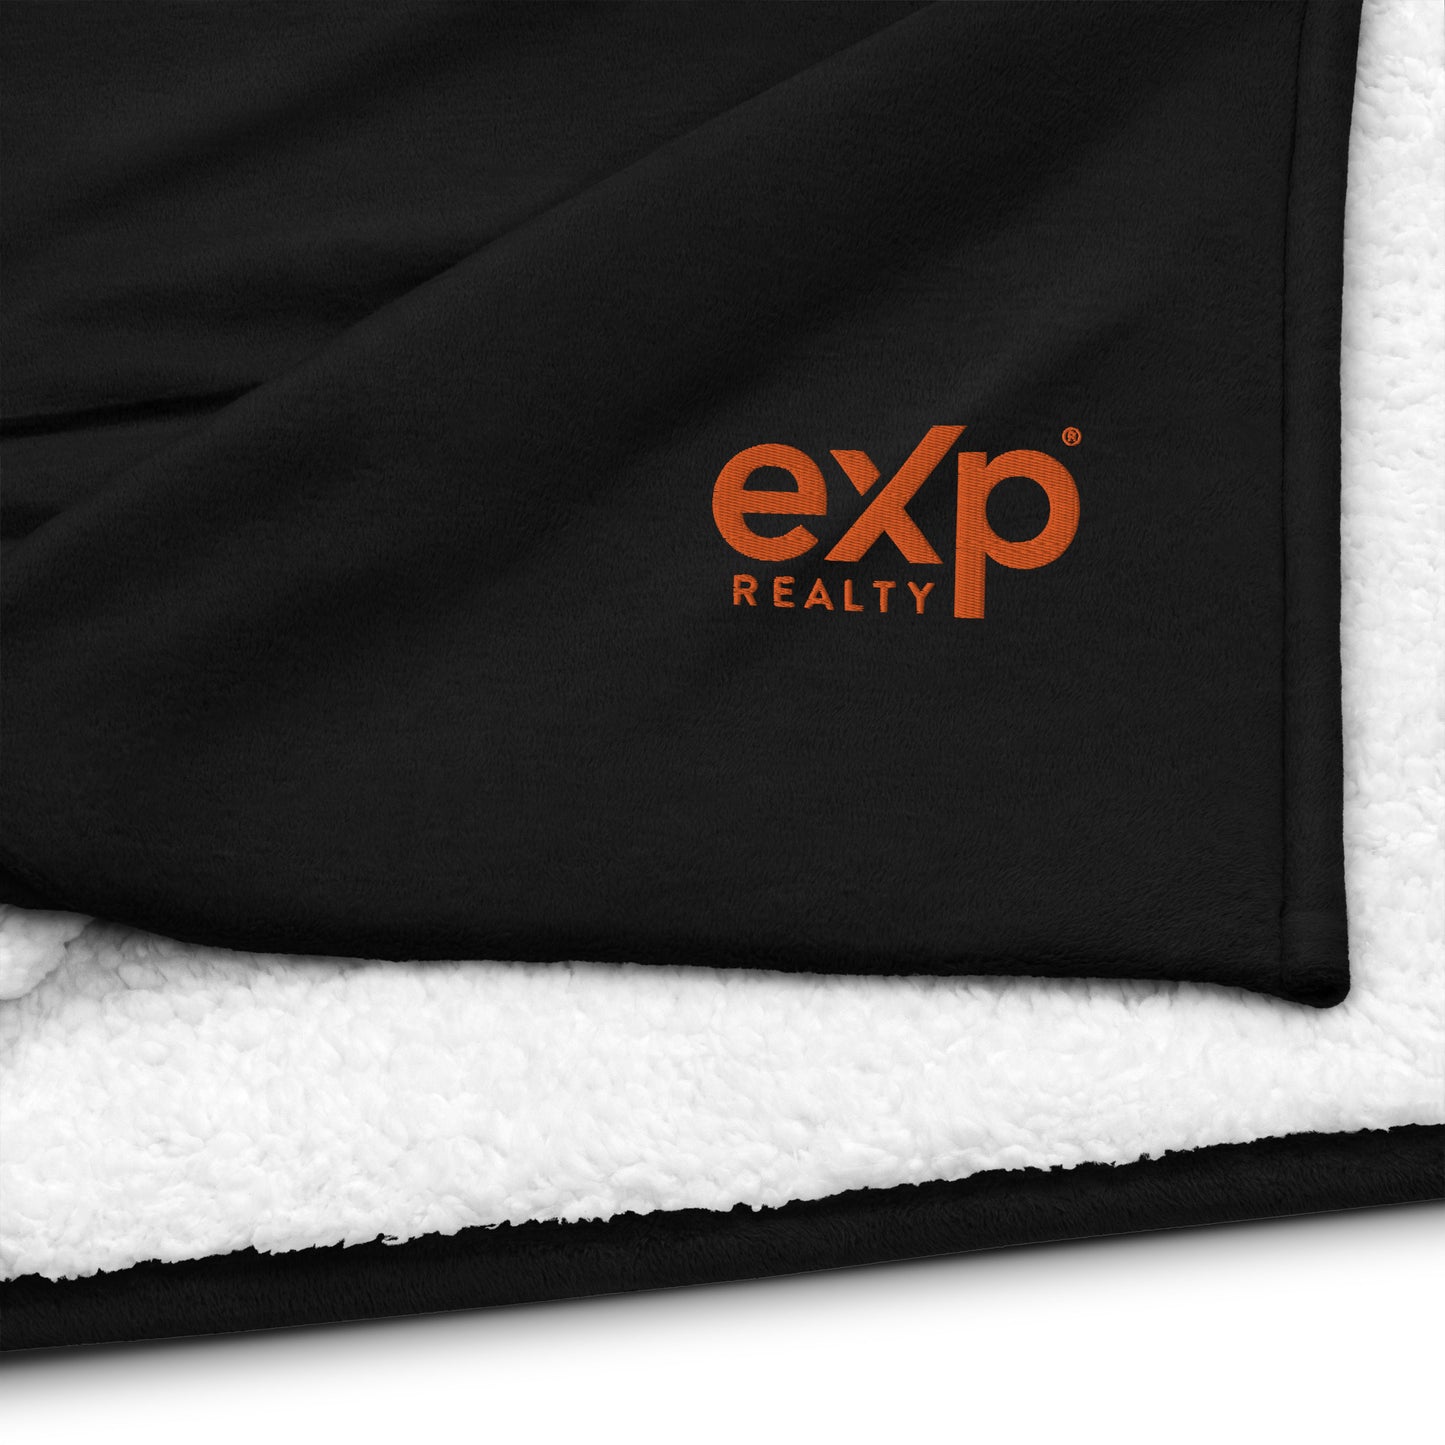 eXp Premium sherpa blanket eXp Wordmark